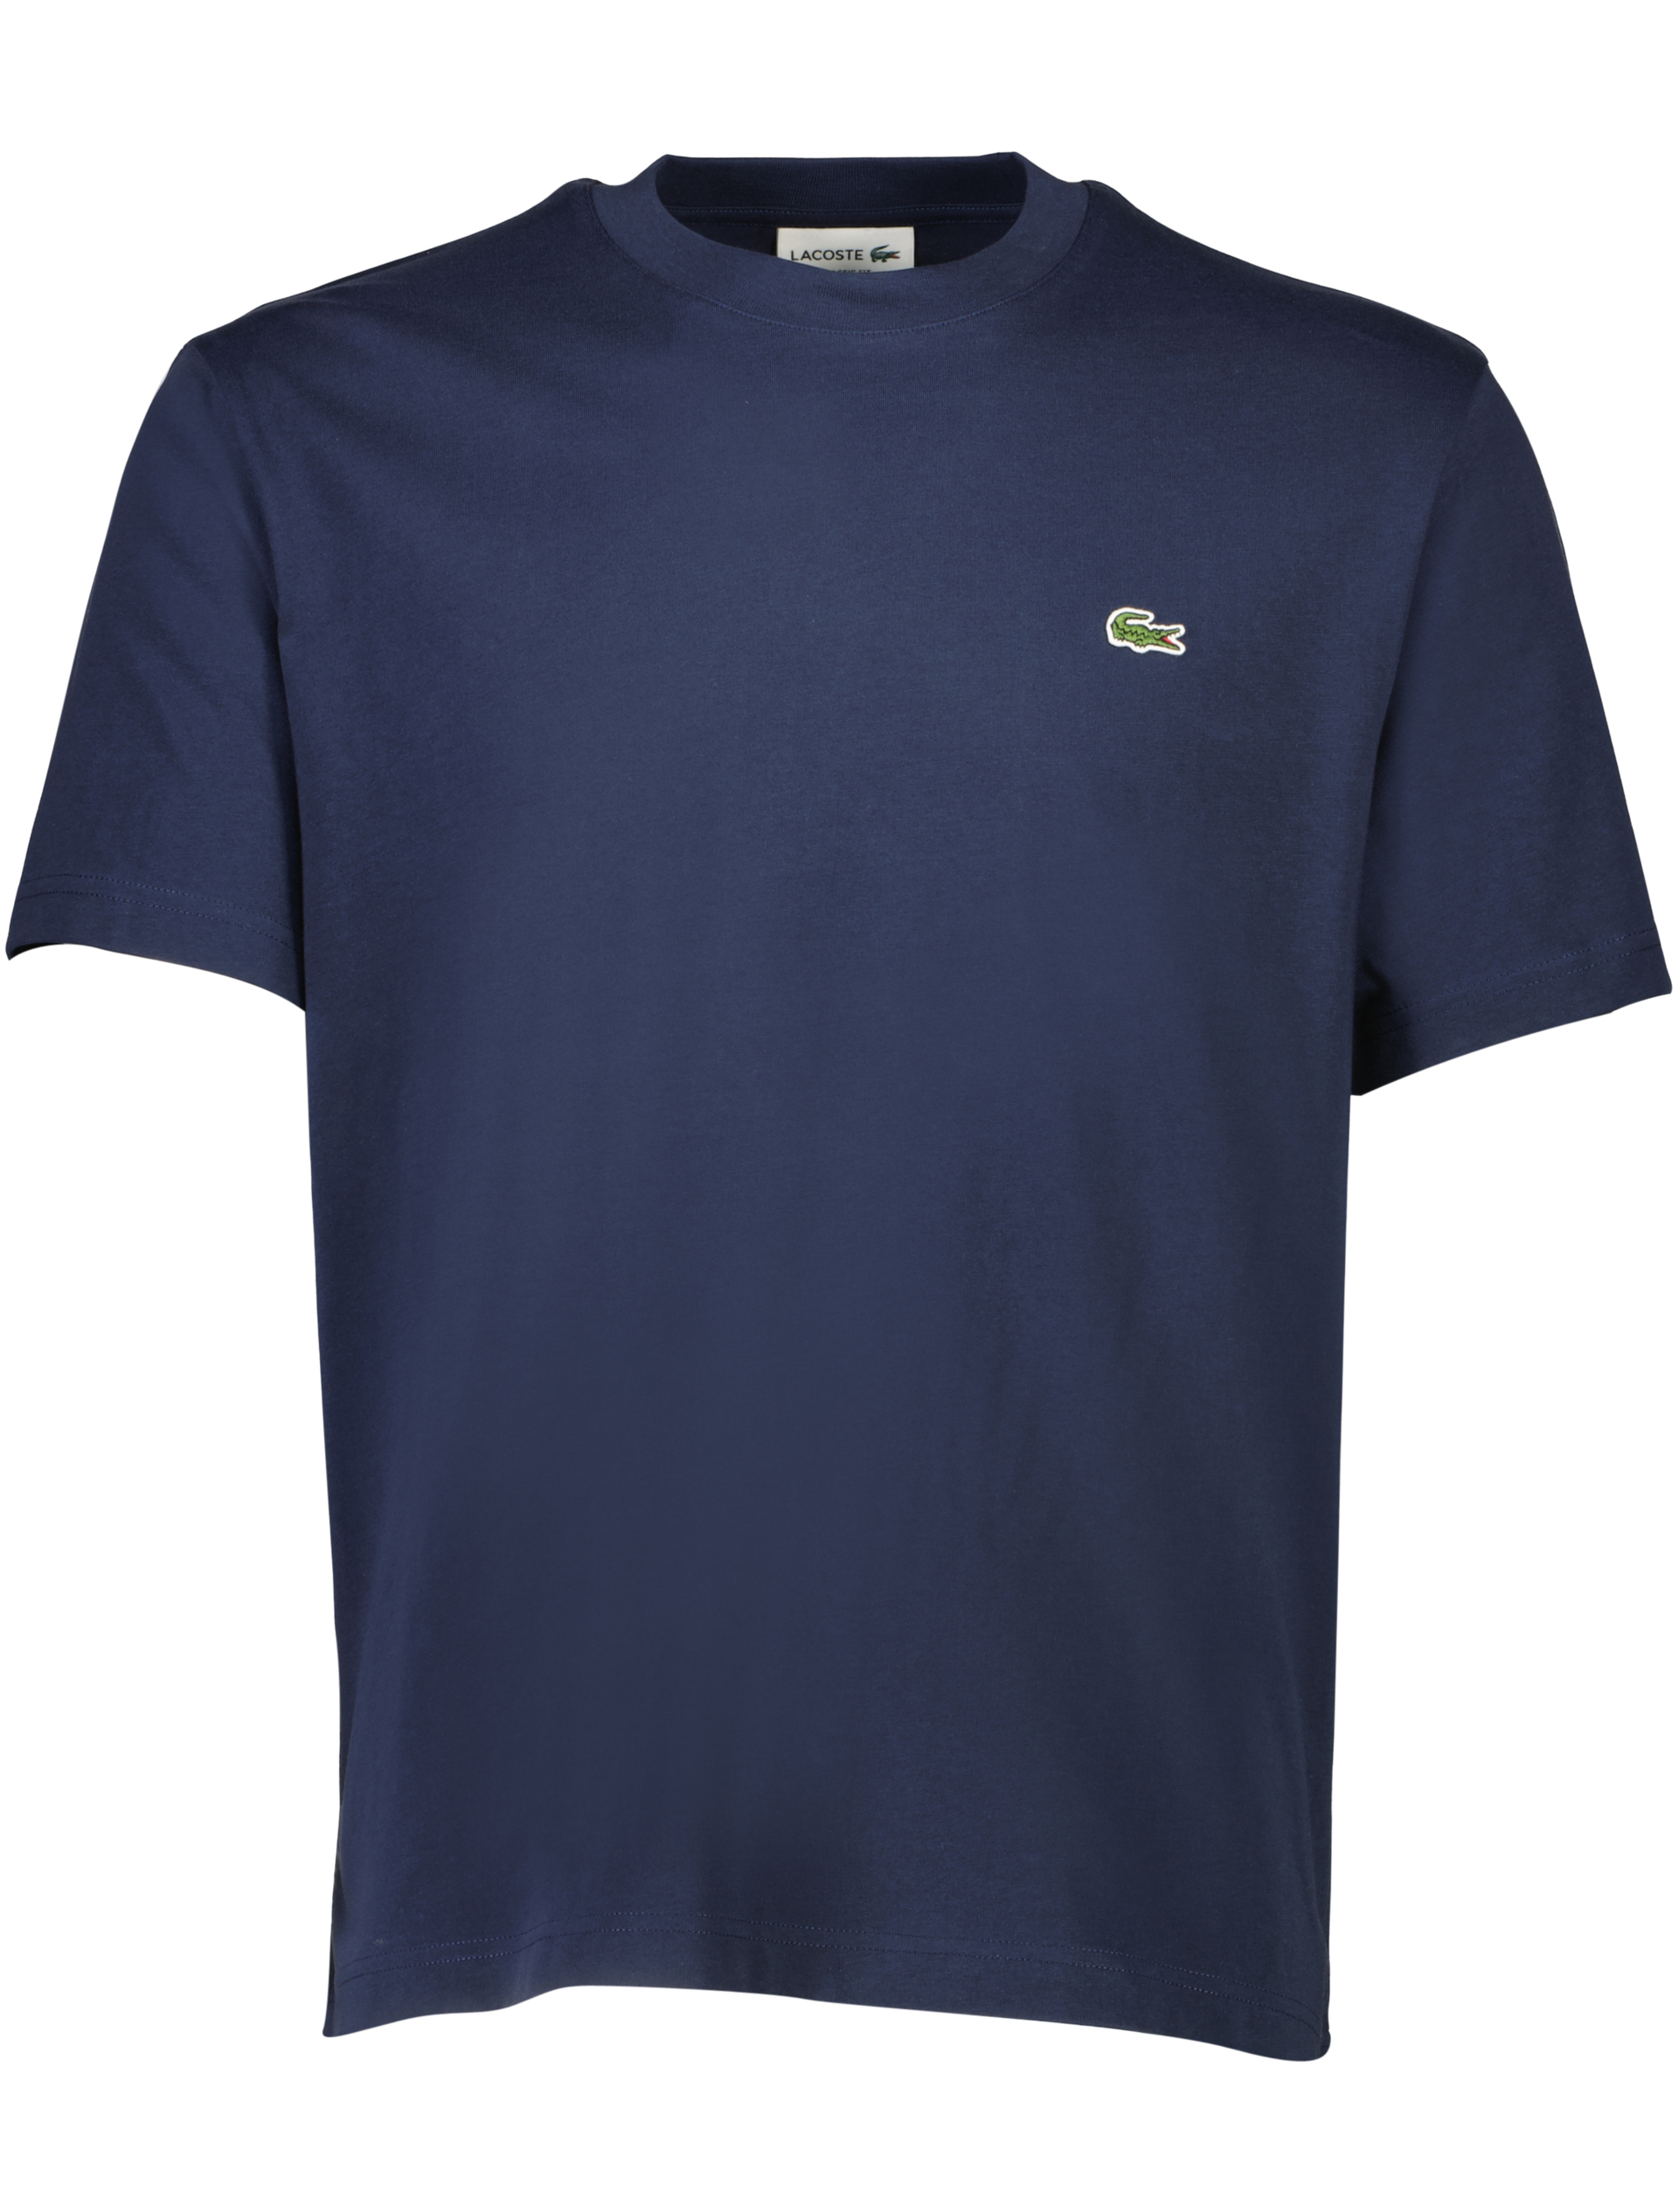 Lacoste T-shirt blå / 166 navy